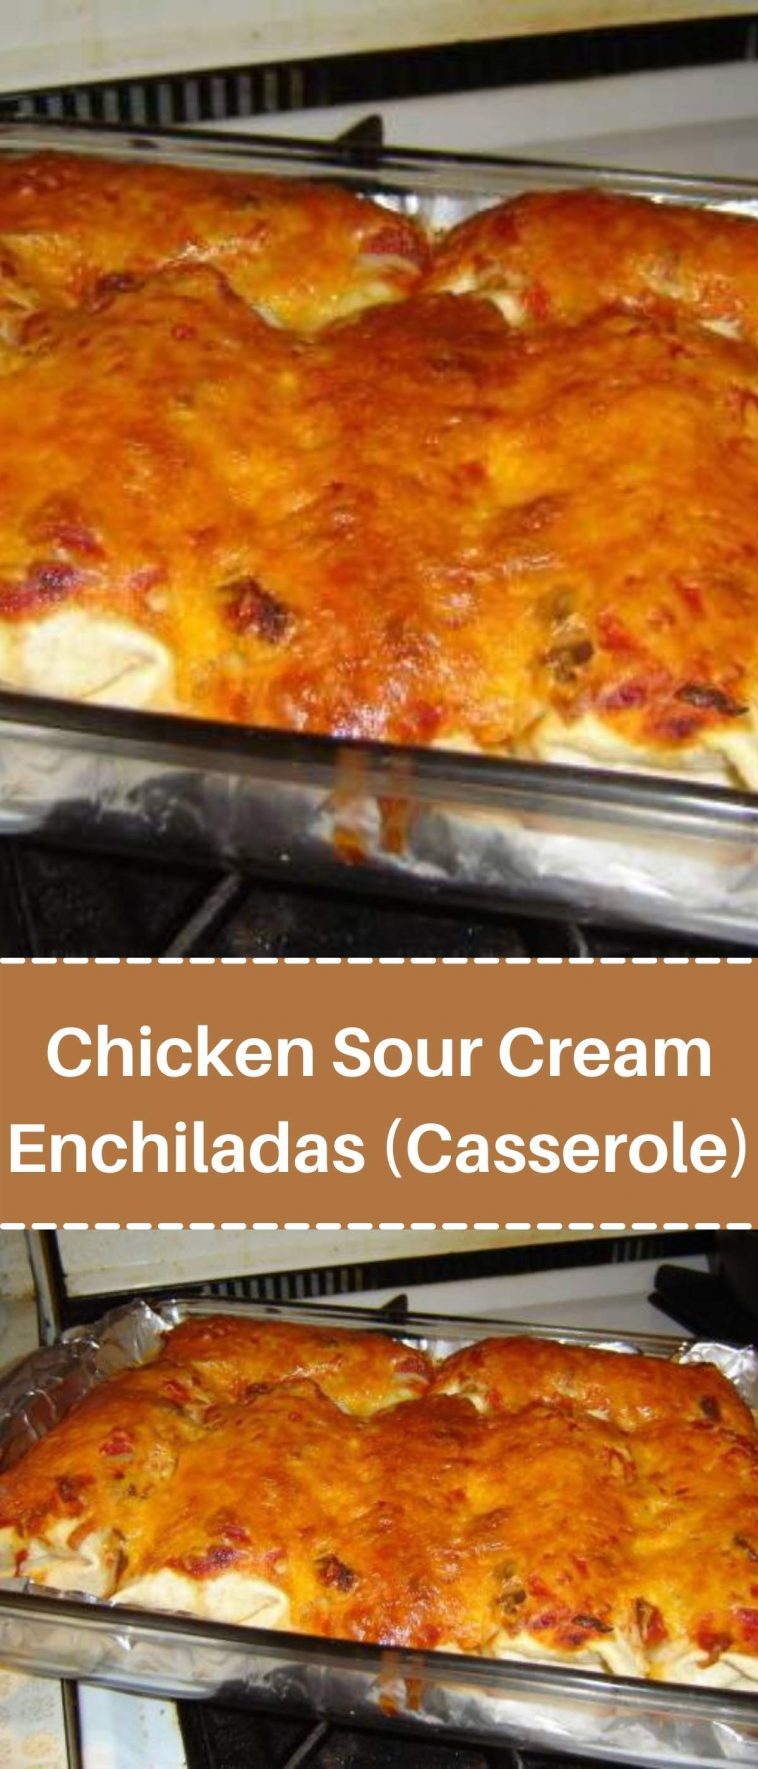 Chicken Sour Cream Enchiladas (Casserole)